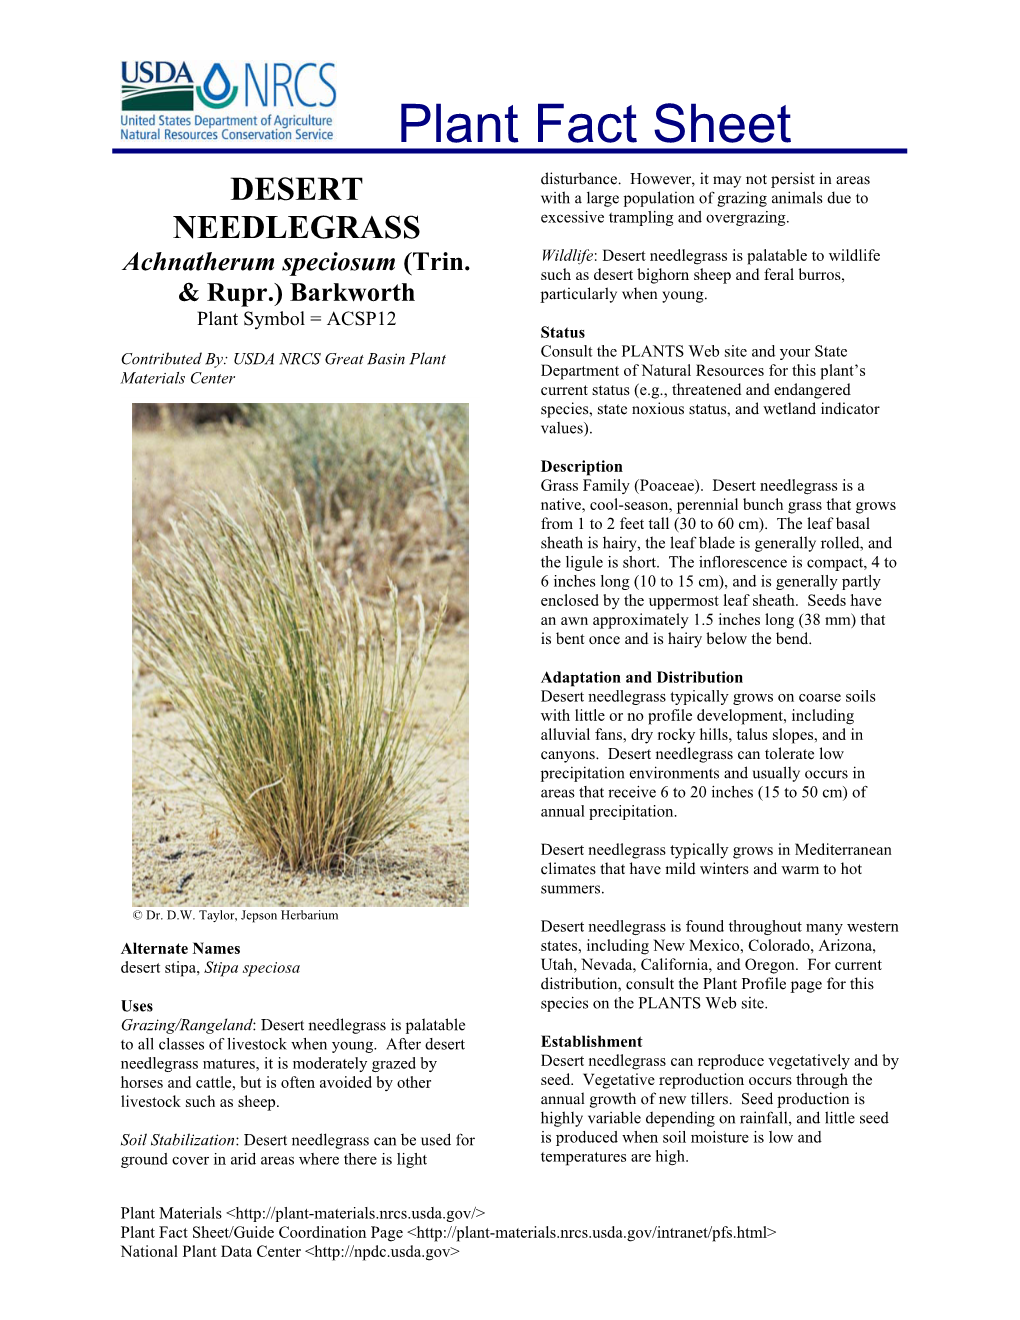 Desert Needlegrass Is Palatable to Wildlife Achnatherum Speciosum (Trin